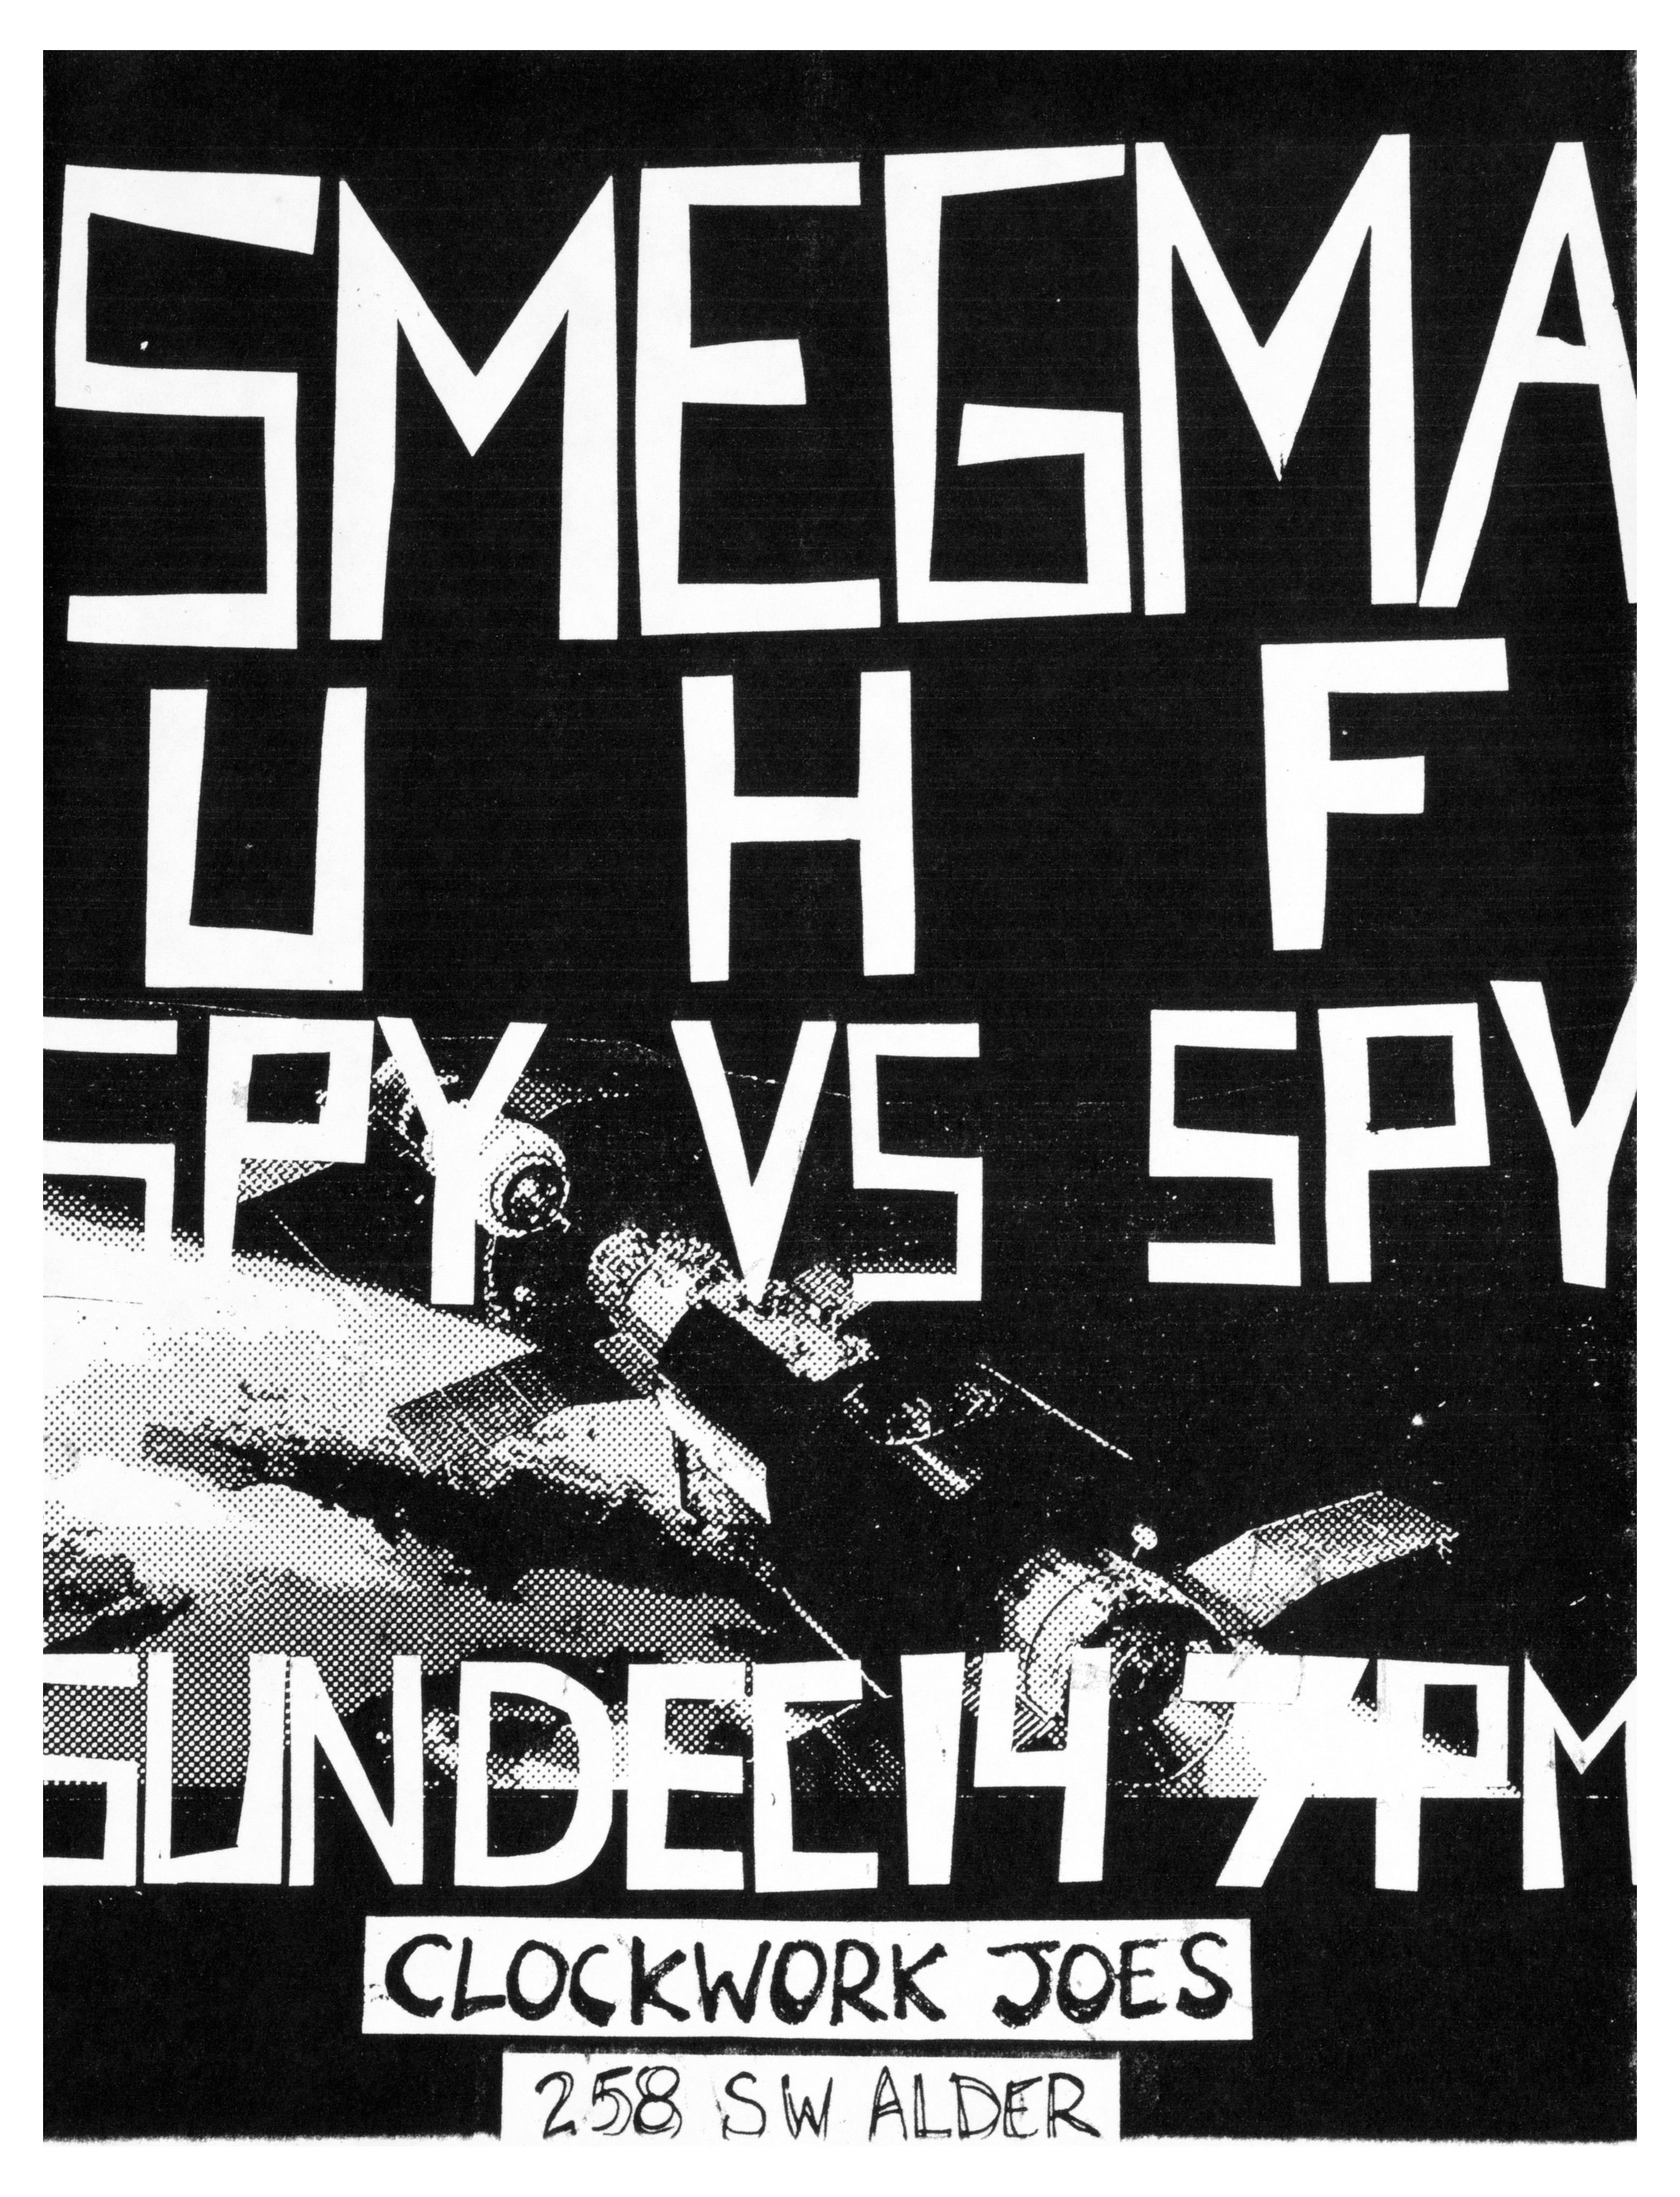 MXP-43.2 Smegma 1980 Clockwork Joes  Dec 14 Concert Poster